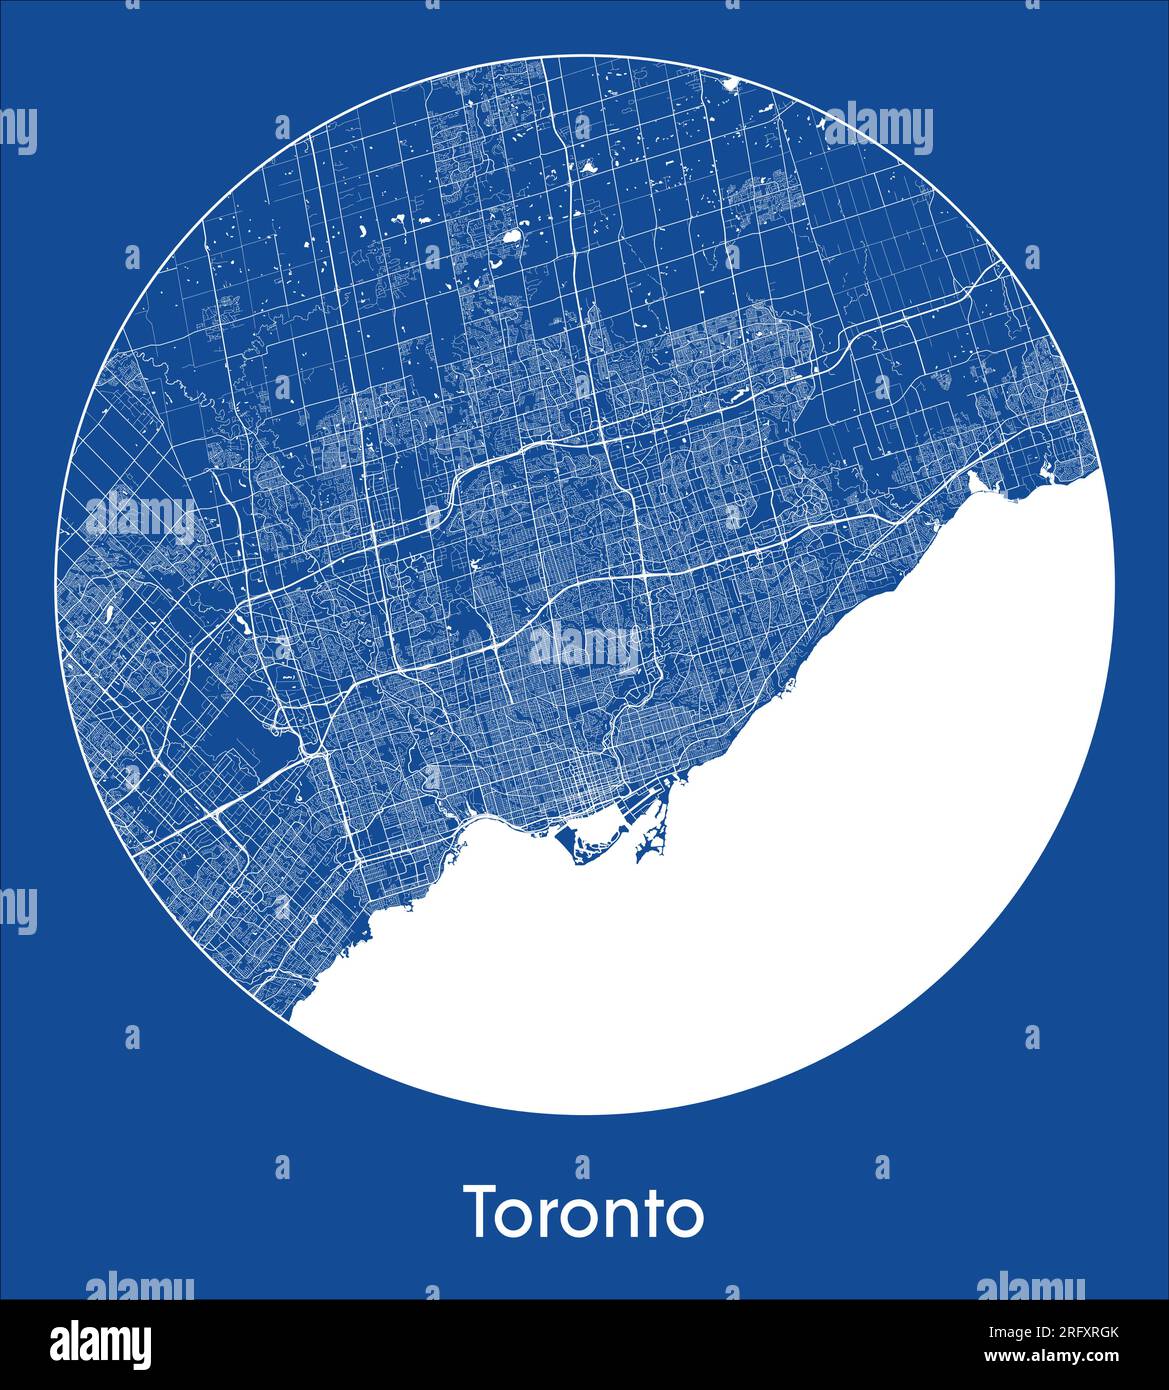 Mapa de la ciudad Toronto Canadá América del Norte azul de impresión circular círculo ilustración vectorial Ilustración del Vector